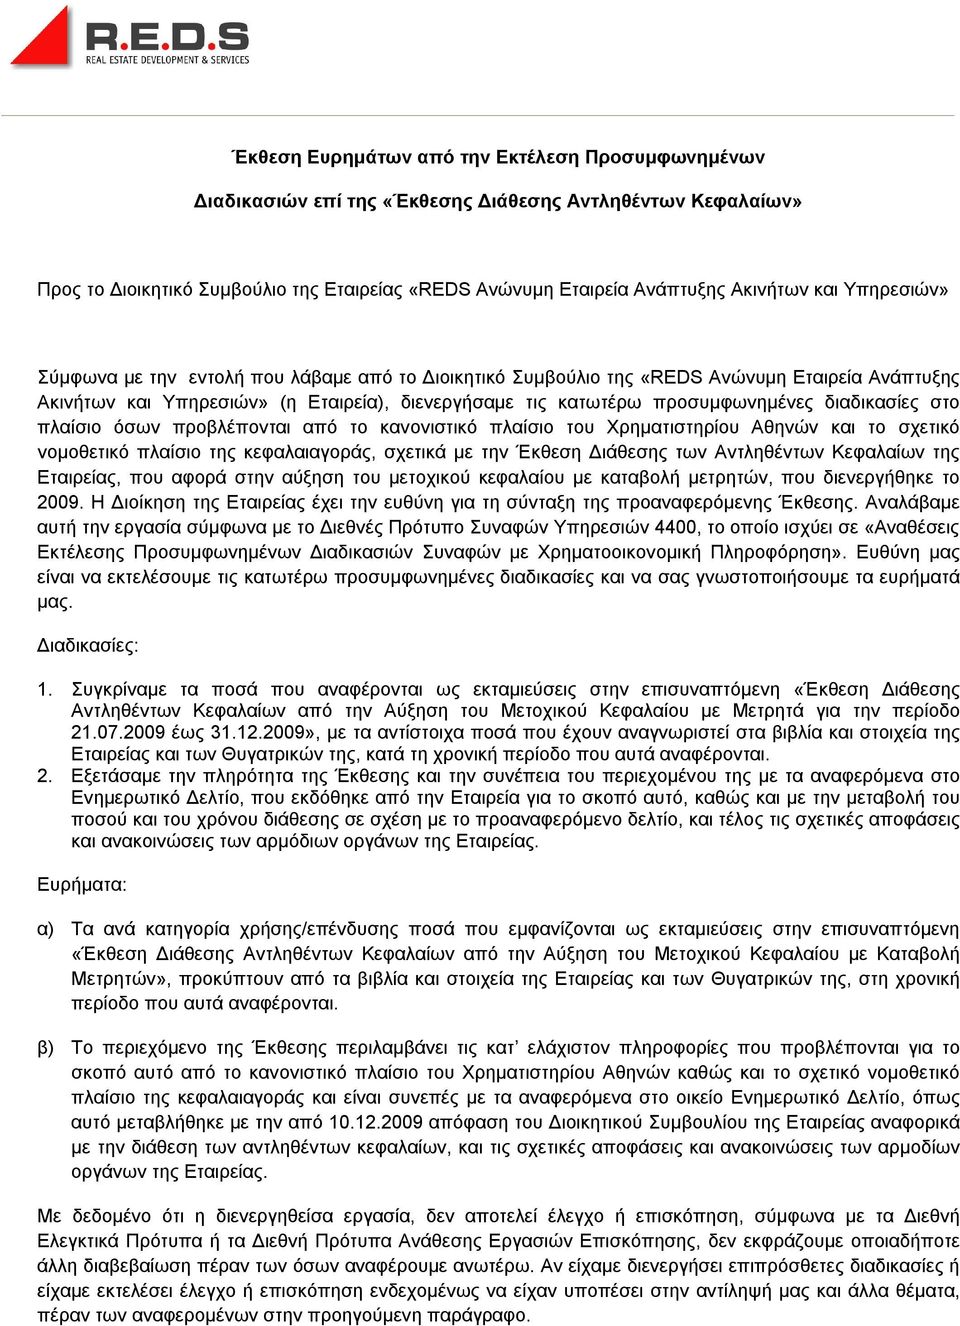 διαδικασίες στο πλαίσιο όσων προβλέπονται από το κανονιστικό πλαίσιο του Χρηματιστηρίου Αθηνών και το σχετικό νομοθετικό πλαίσιο της κεφαλαιαγοράς, σχετικά με την Έκθεση Διάθεσης των Αντληθέντων